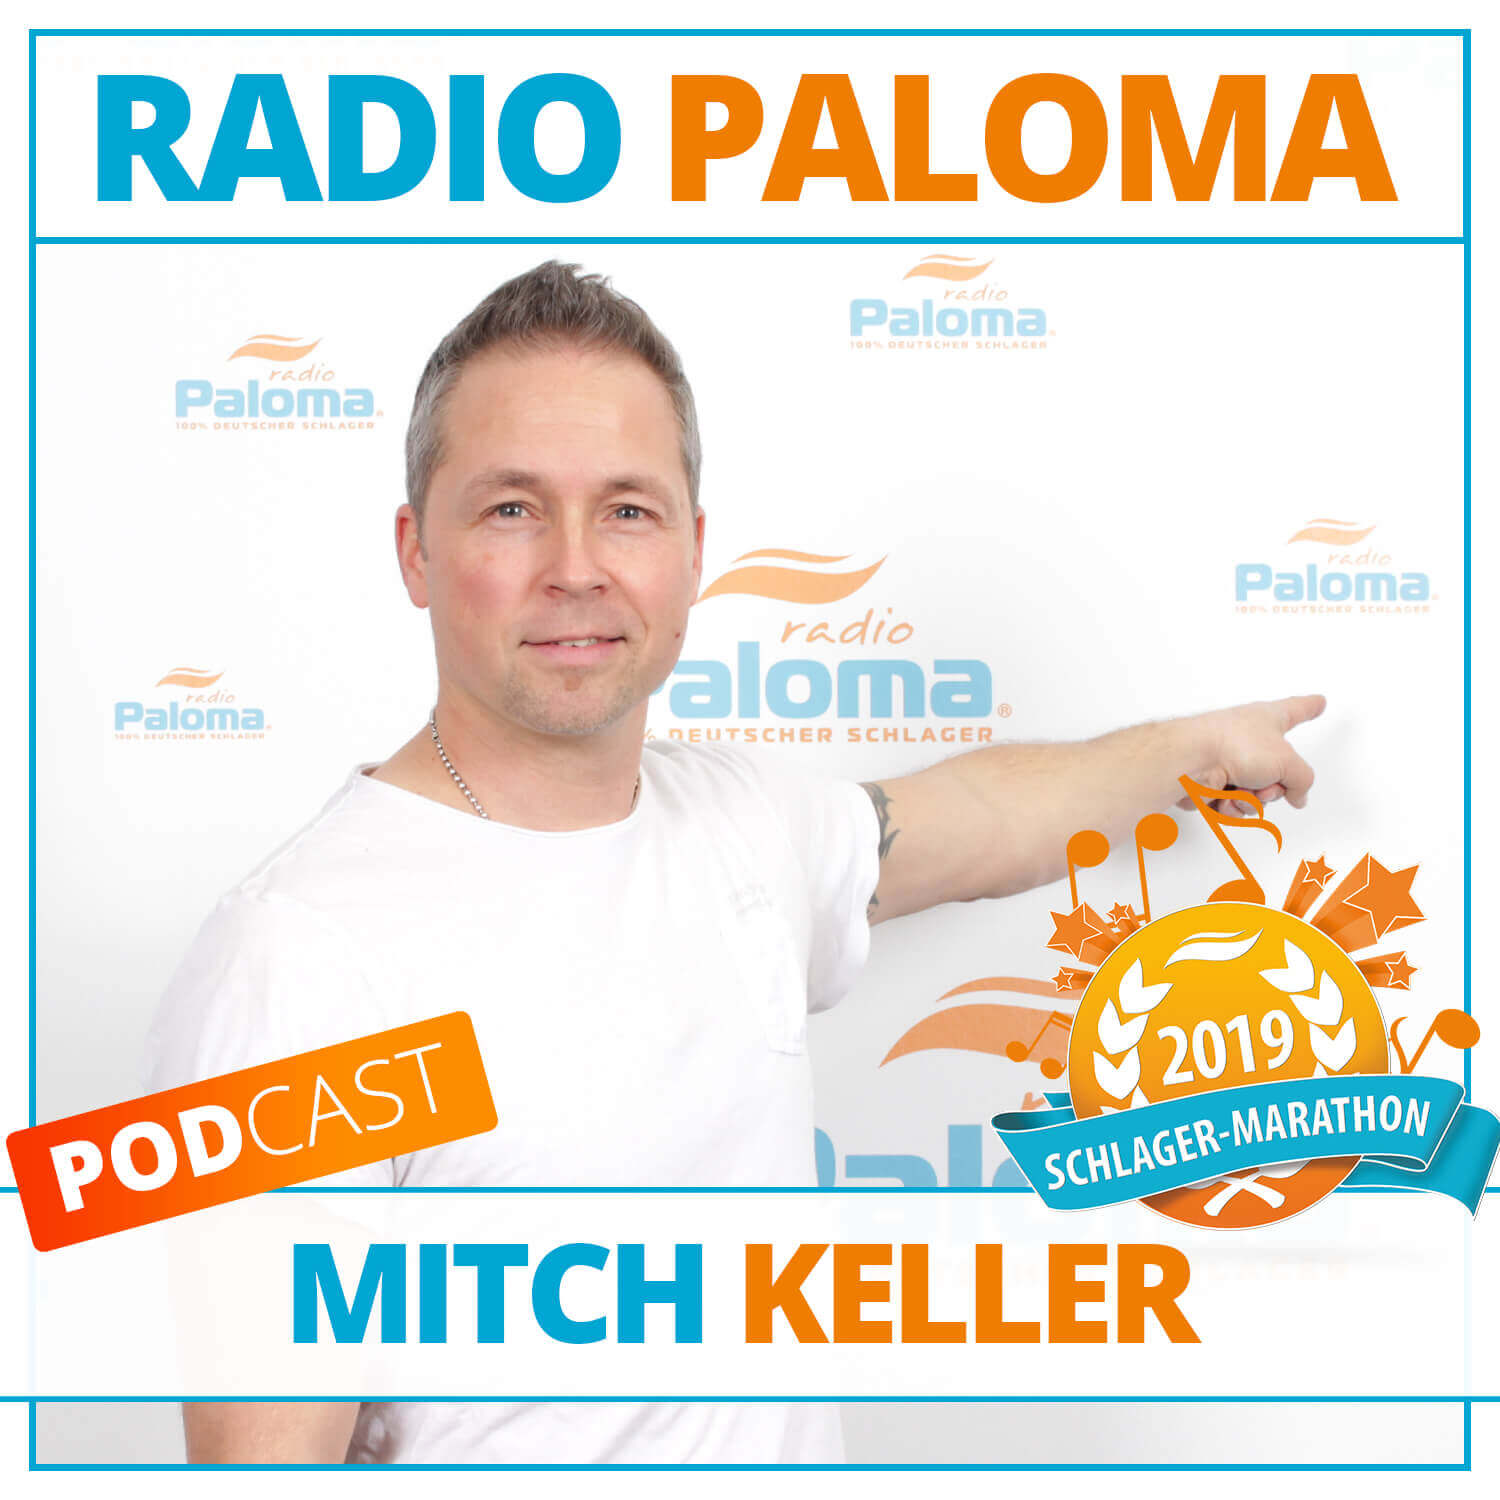 Der Radio Paloma Schlager-Marathon 2019 mit Mitch Keller